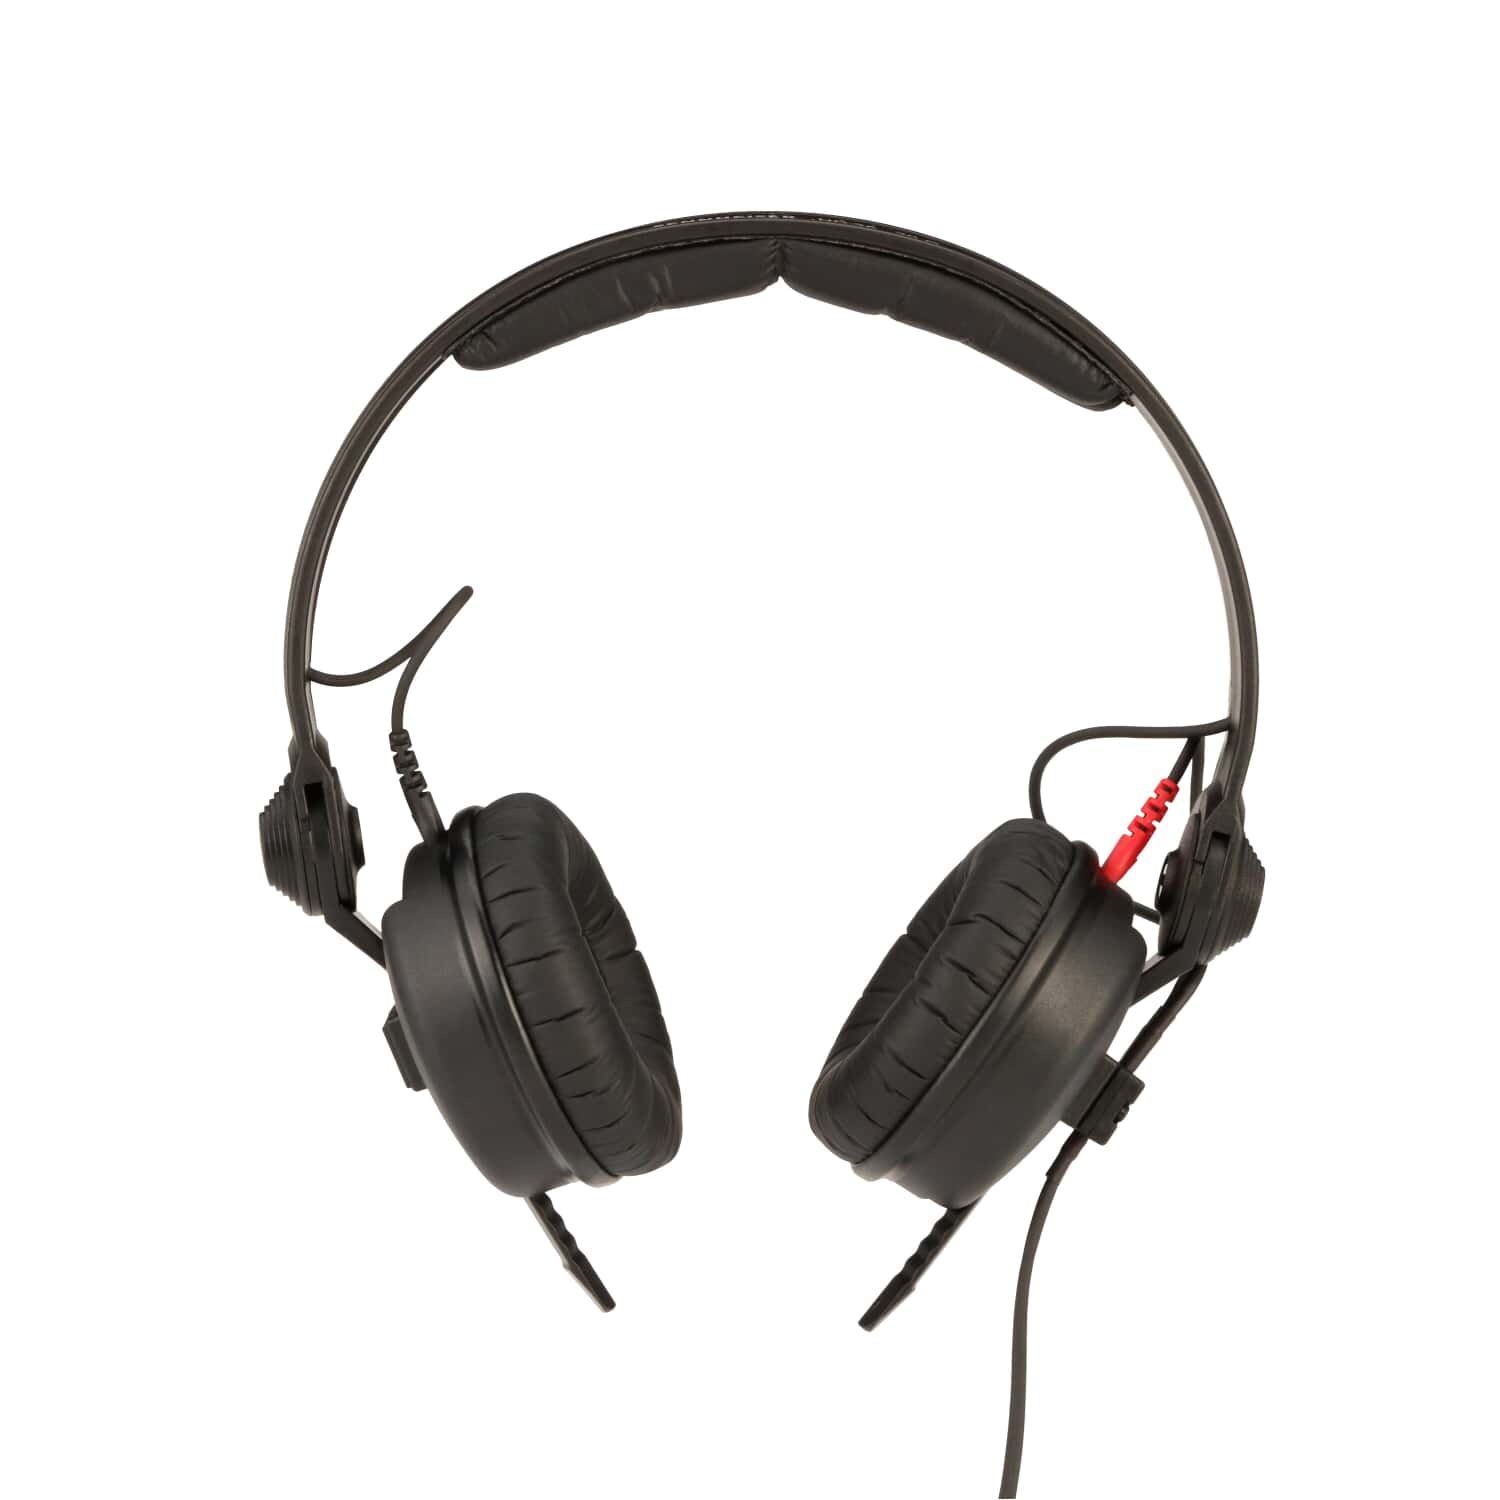 Sennheiser - supraaurales para DJ - Reducción de ruido, respuesta de bajos